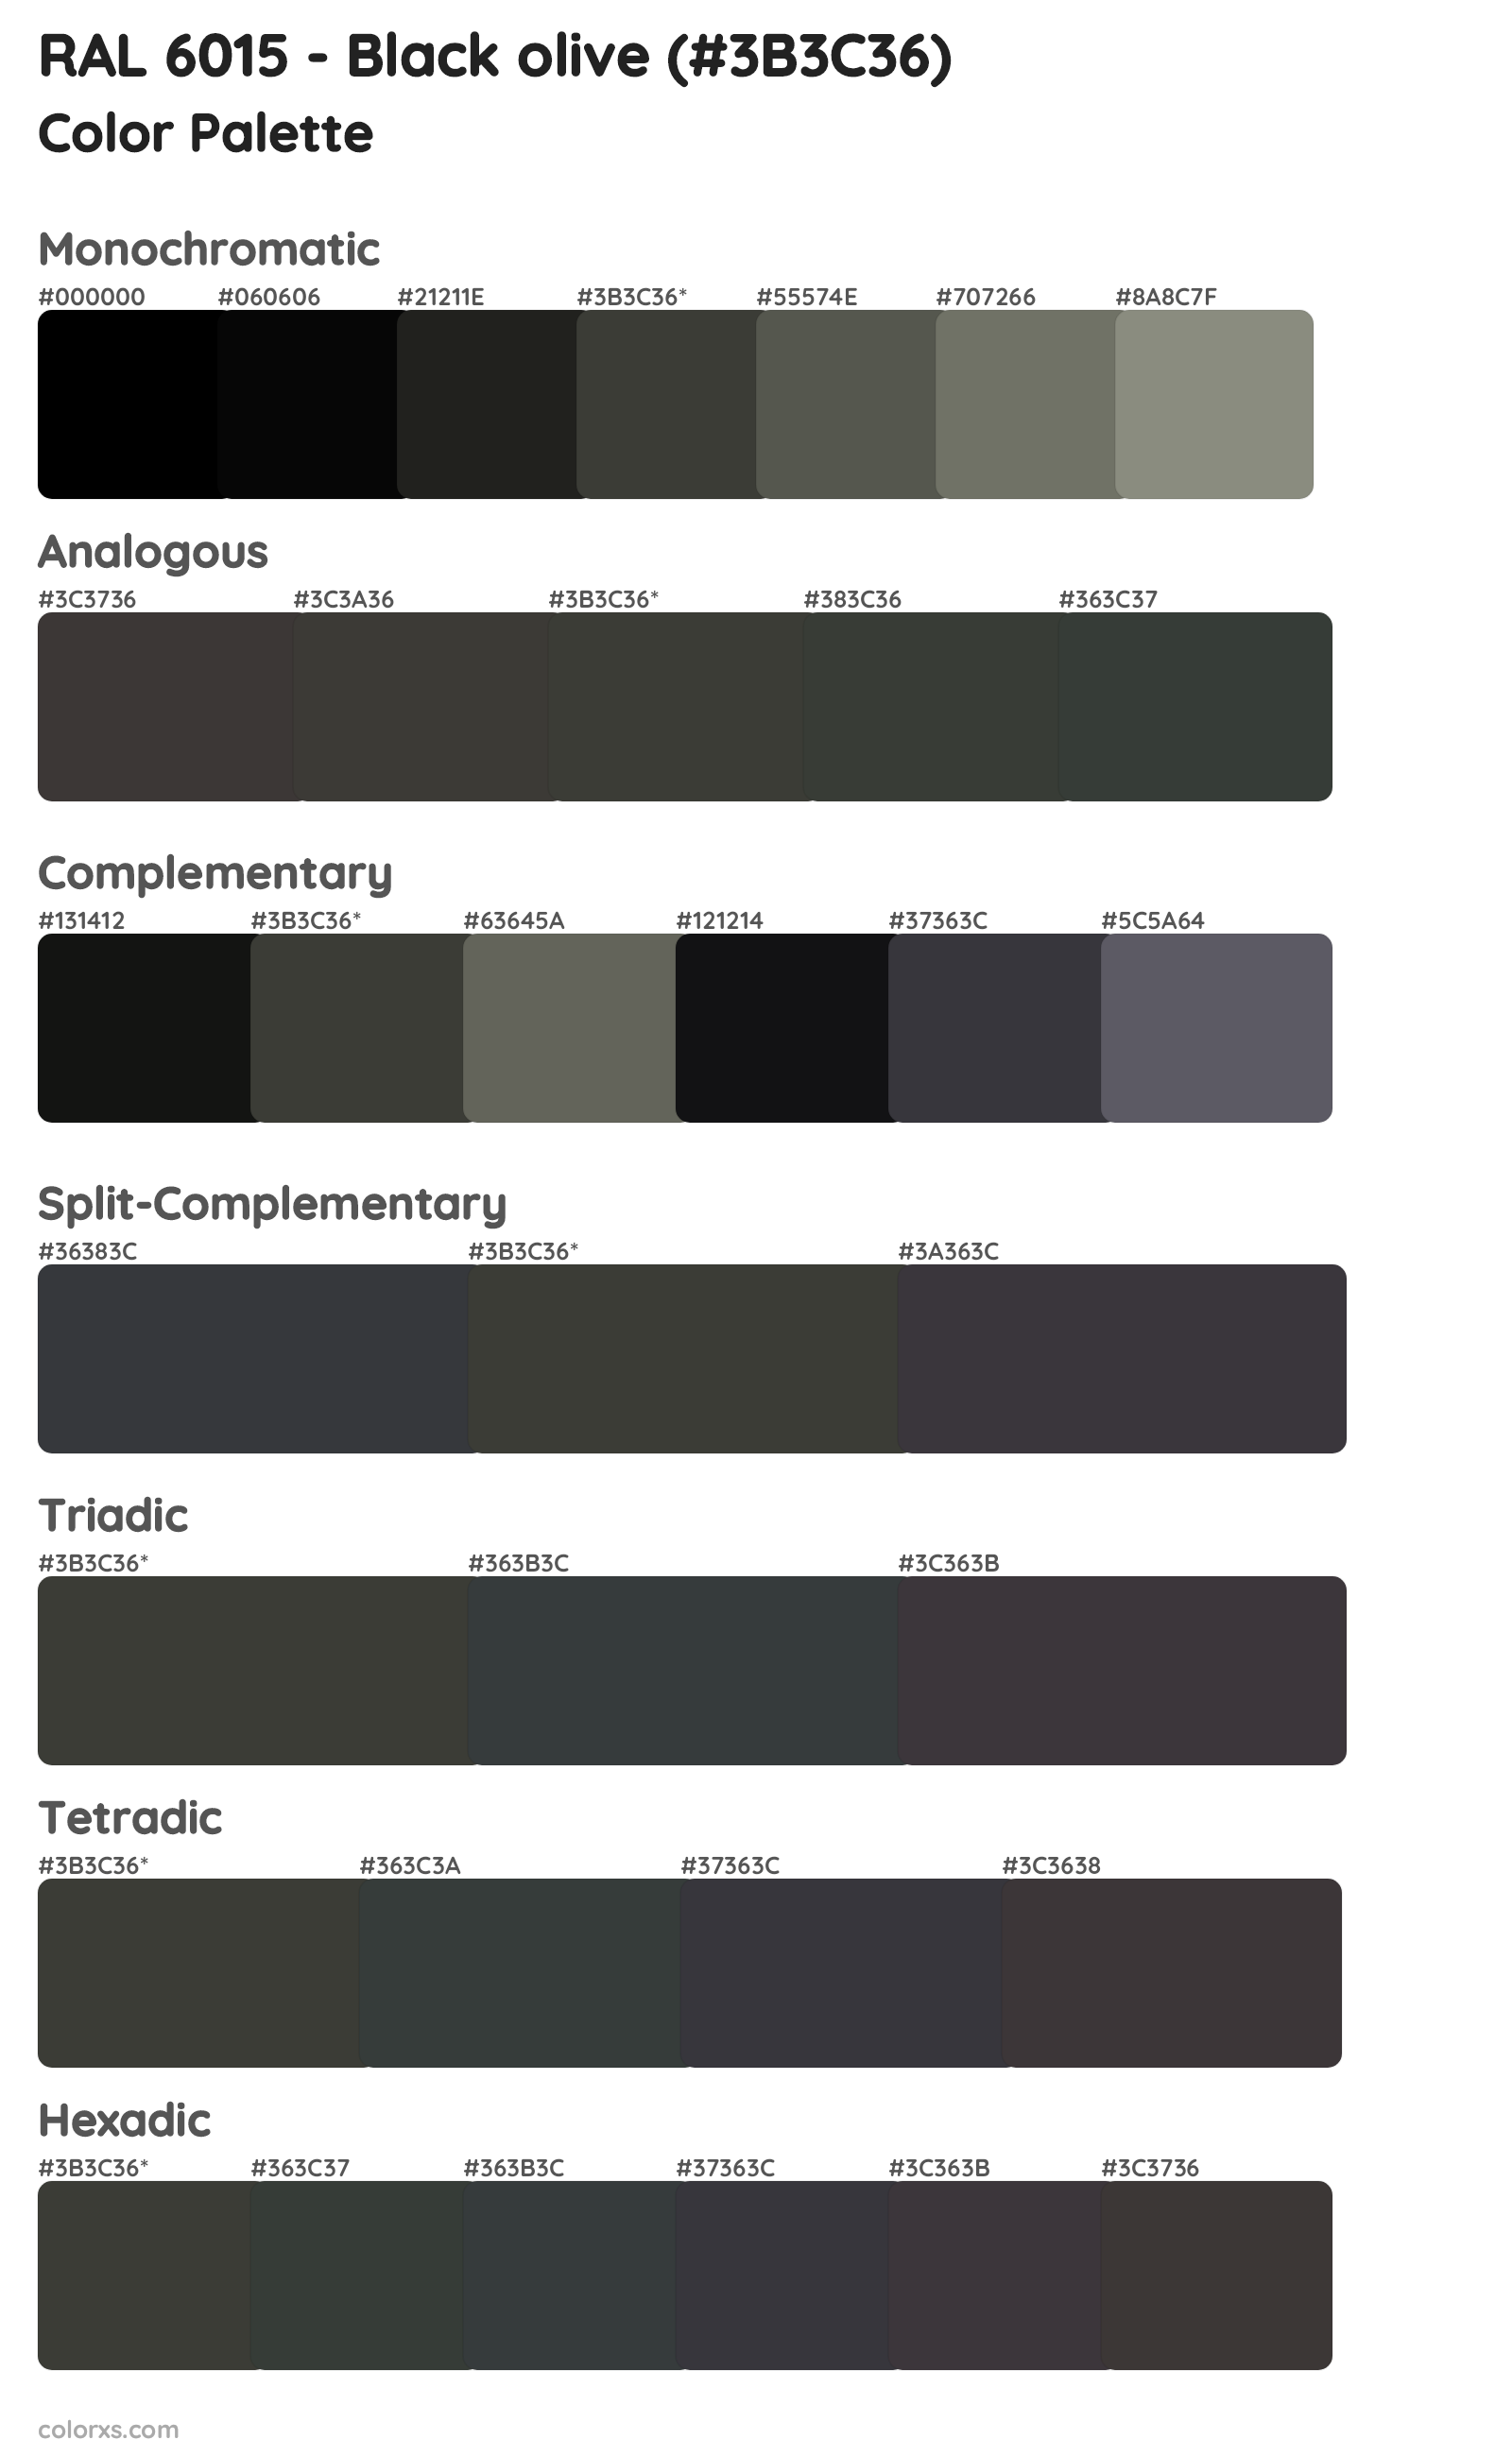 RAL 6015 - Black olive Color Scheme Palettes